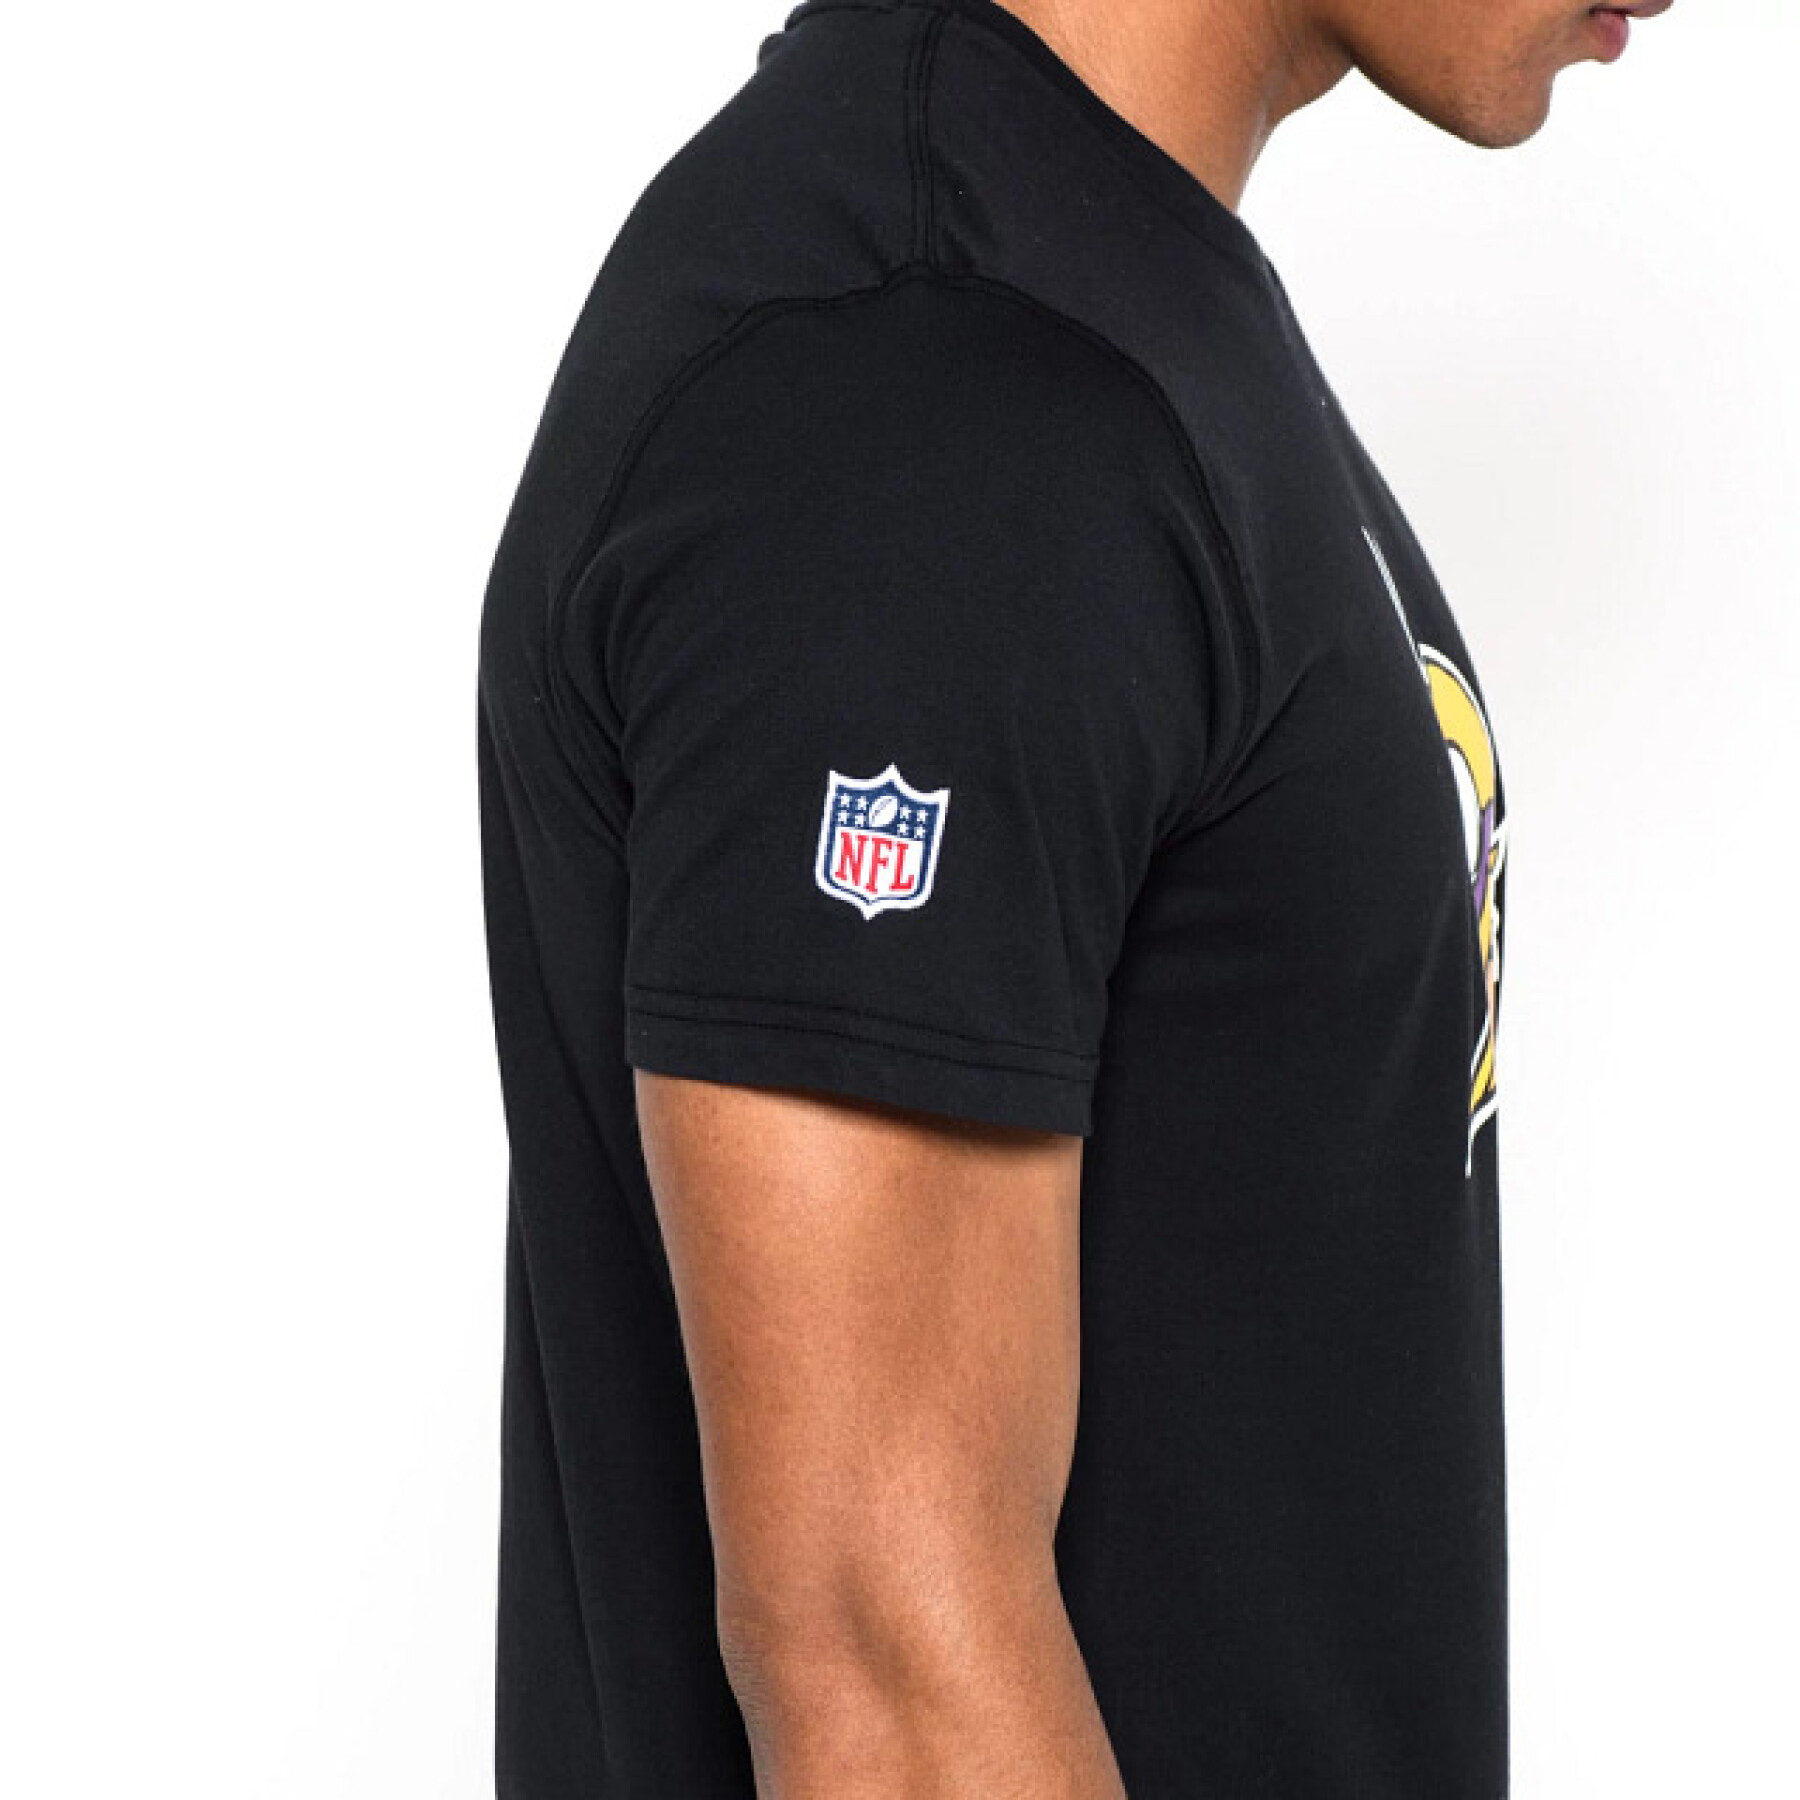 T-Shirt NFL Minnesota Vikings